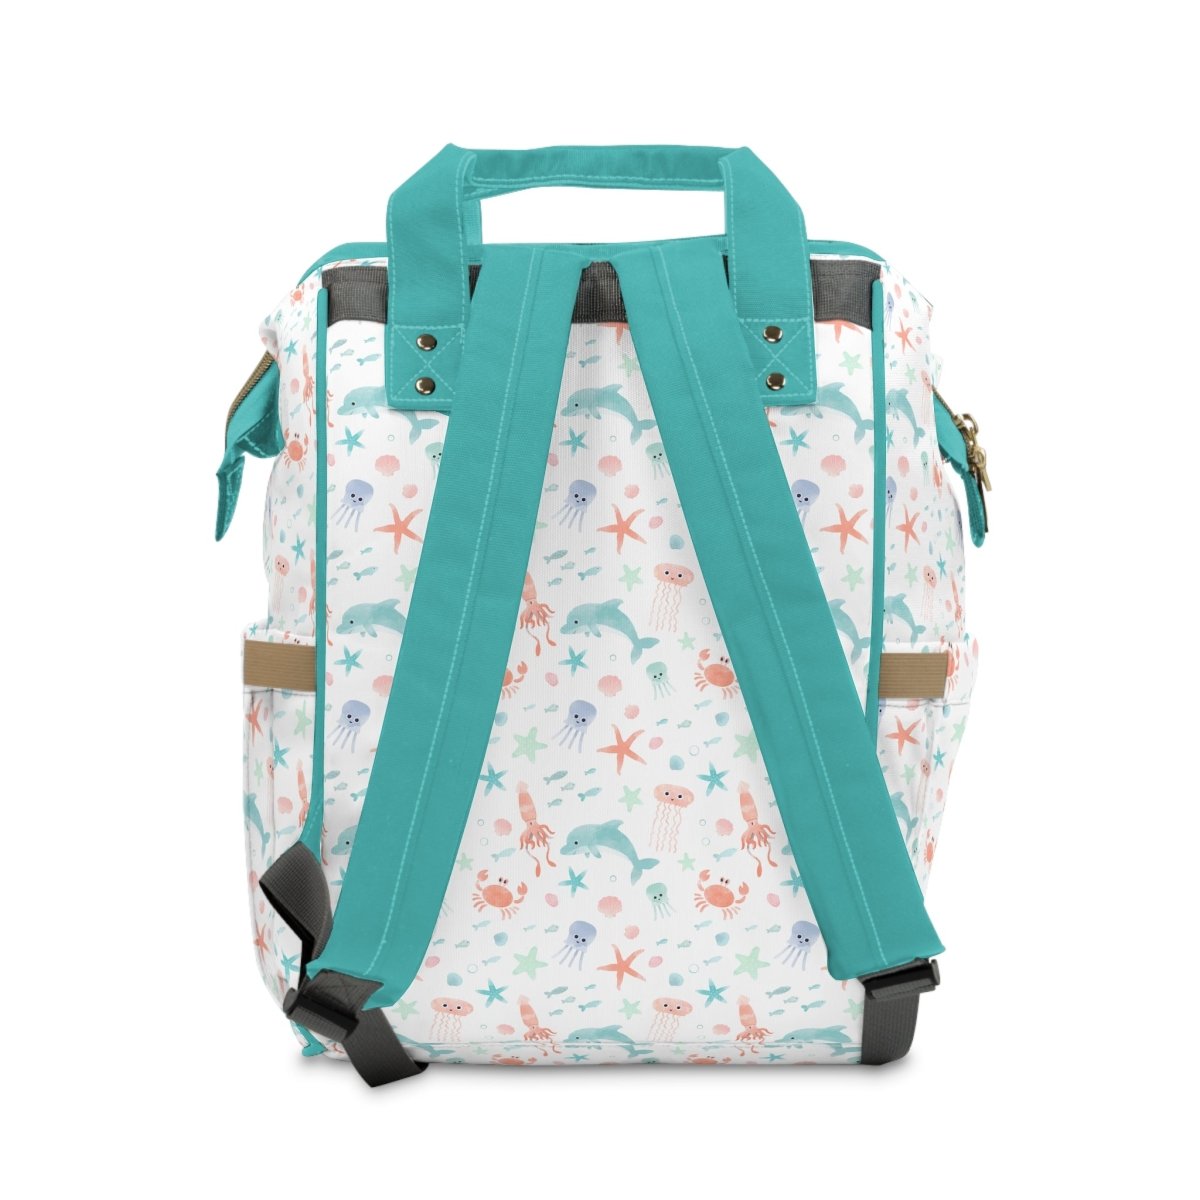 Under the Sea Personalized Backpack Diaper Bag - gender_boy, gender_girl, gender_neutral